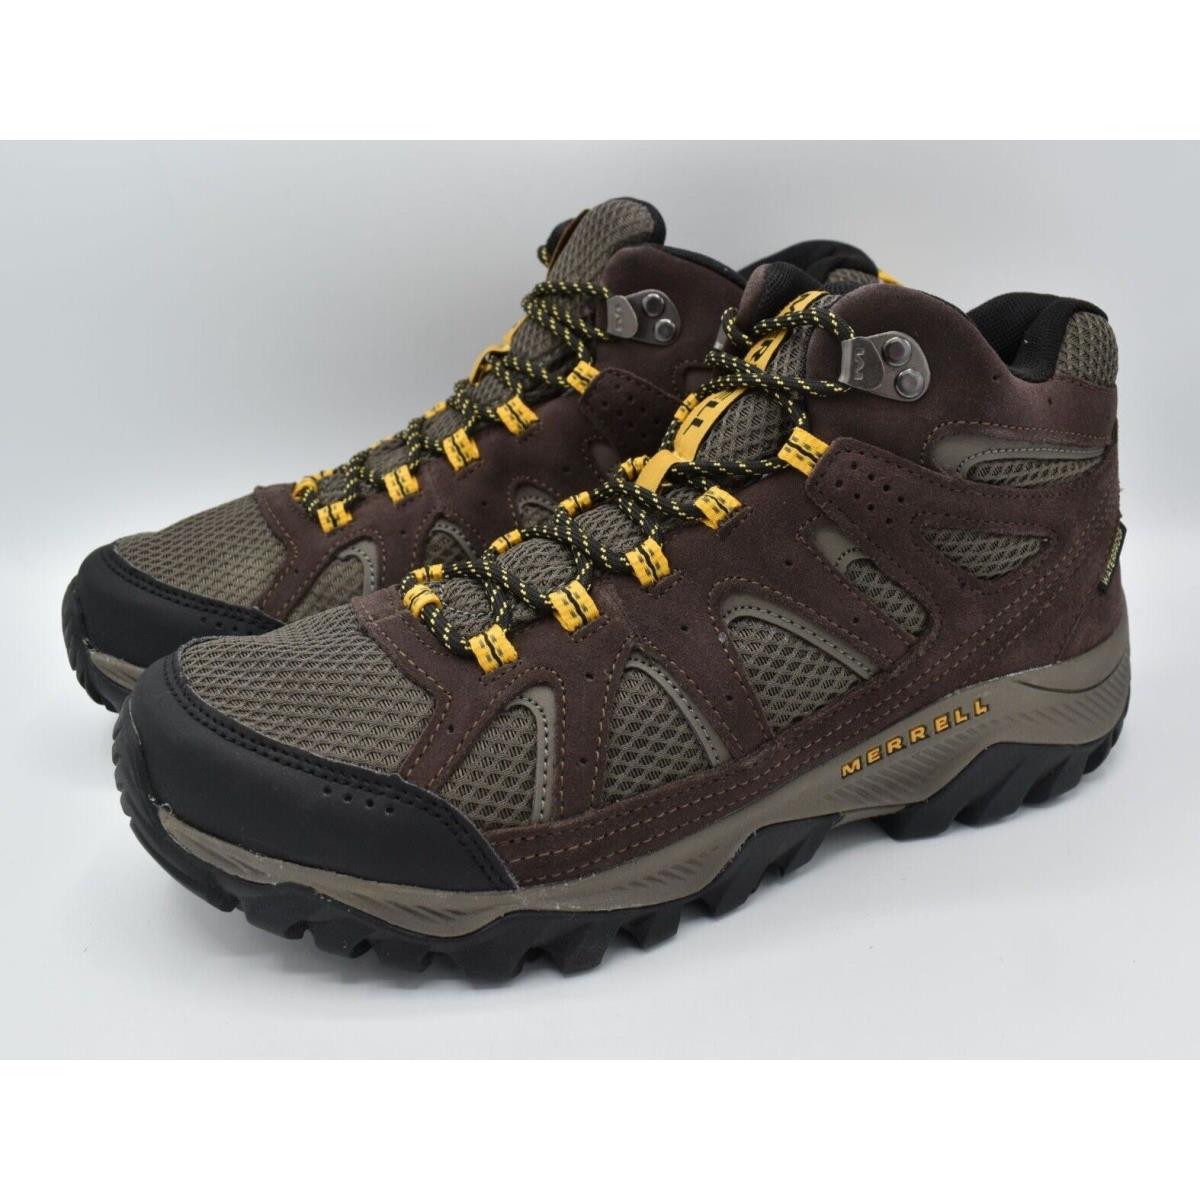 Merrell Men Size 11.5 Oakcreek Mid Waterproof Expresso Hiking Boots Shoes